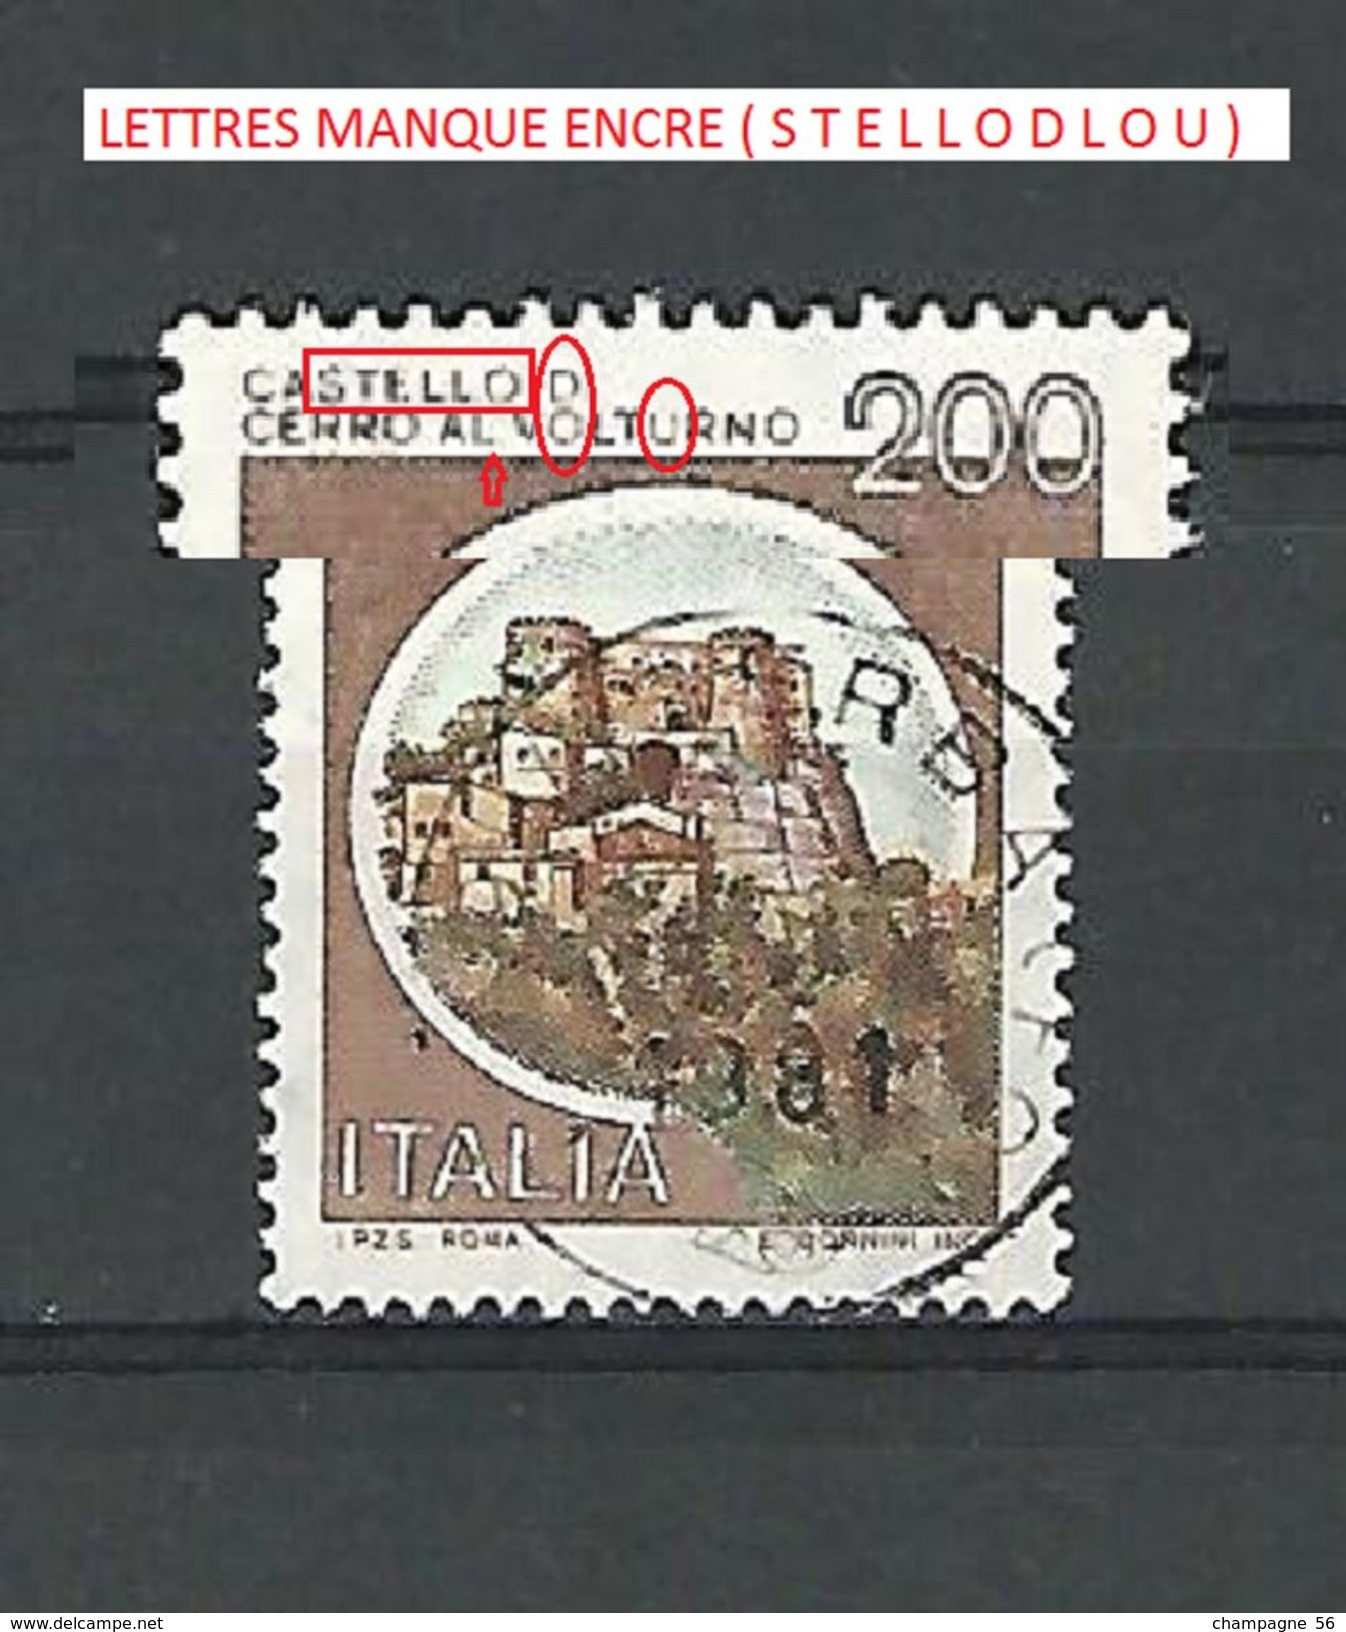 VARIÉTÉS 1980 N° 1445 ITALIE 200  CHATEAUX DE CERRO AL VOLTURNO ISERNIA 1981 OBLITÉRÉ - Varietà E Curiosità